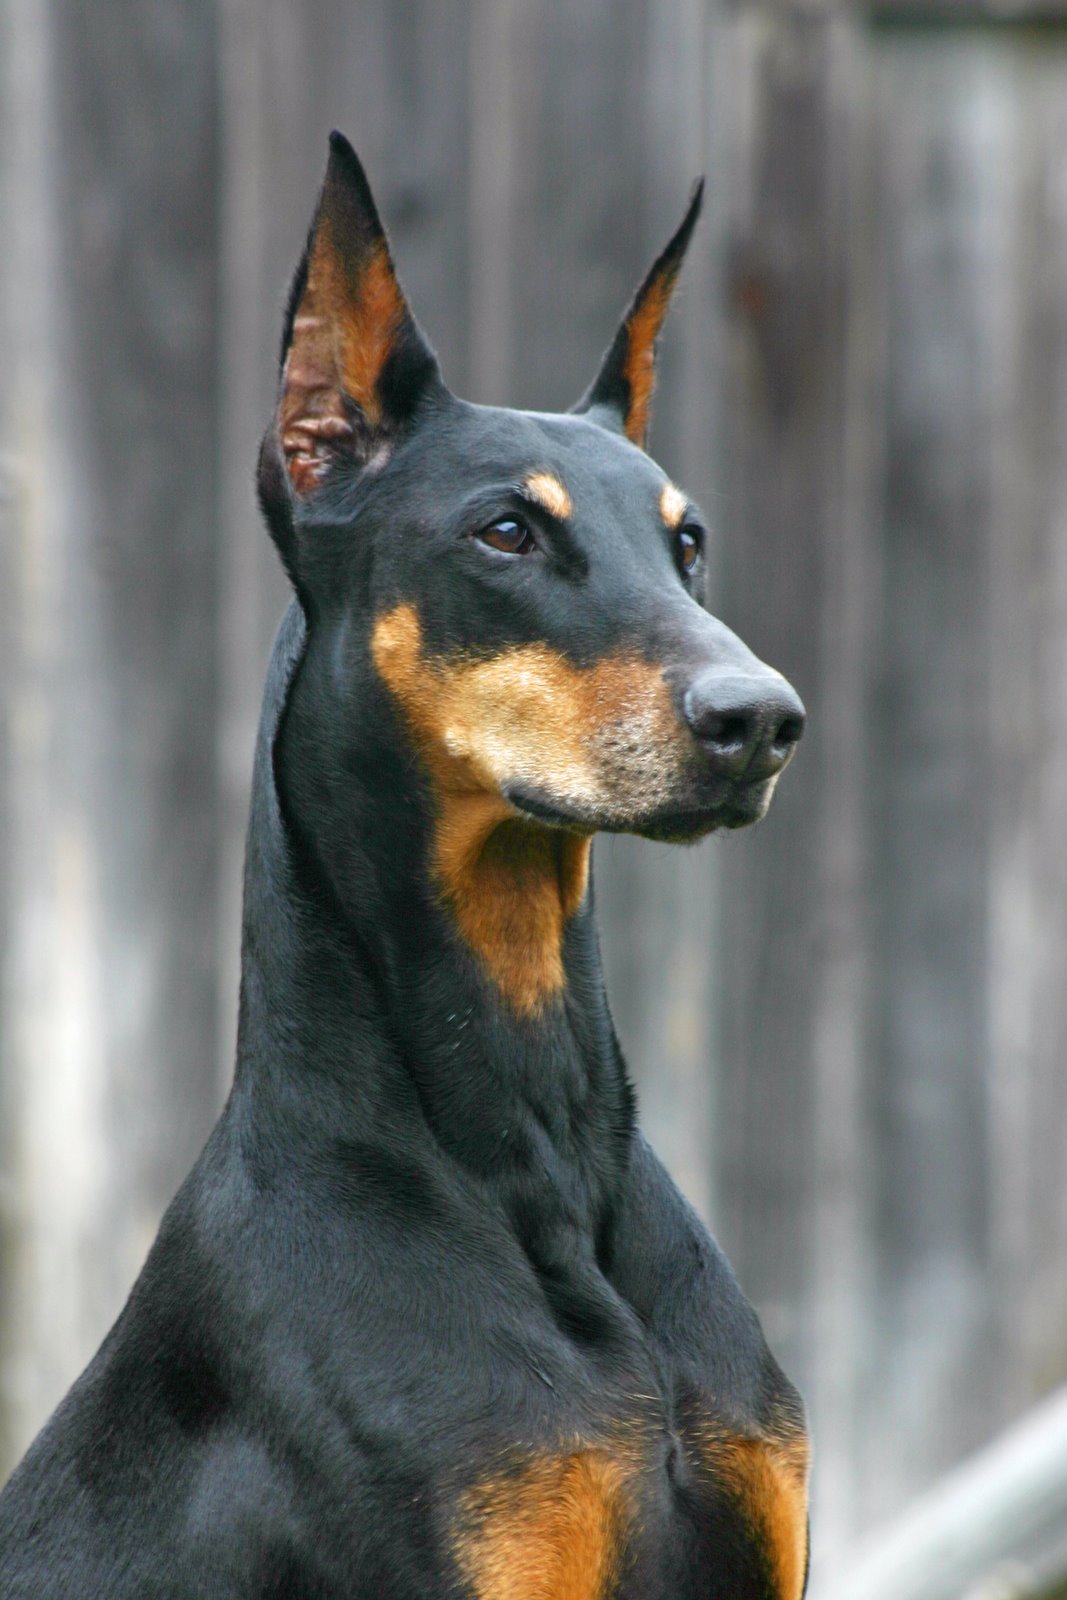 Pandpand パンドパンド V Twitter 本日の世界の愛犬 護衛犬としても有名な犬種です 犬種名 ドーベルマン 原産国 ドイツ 特徴 犬のサラブレットと呼ばれる程筋肉質である 元々は家業犬を示す ドーベルマン ピンシャー と名がついていたが